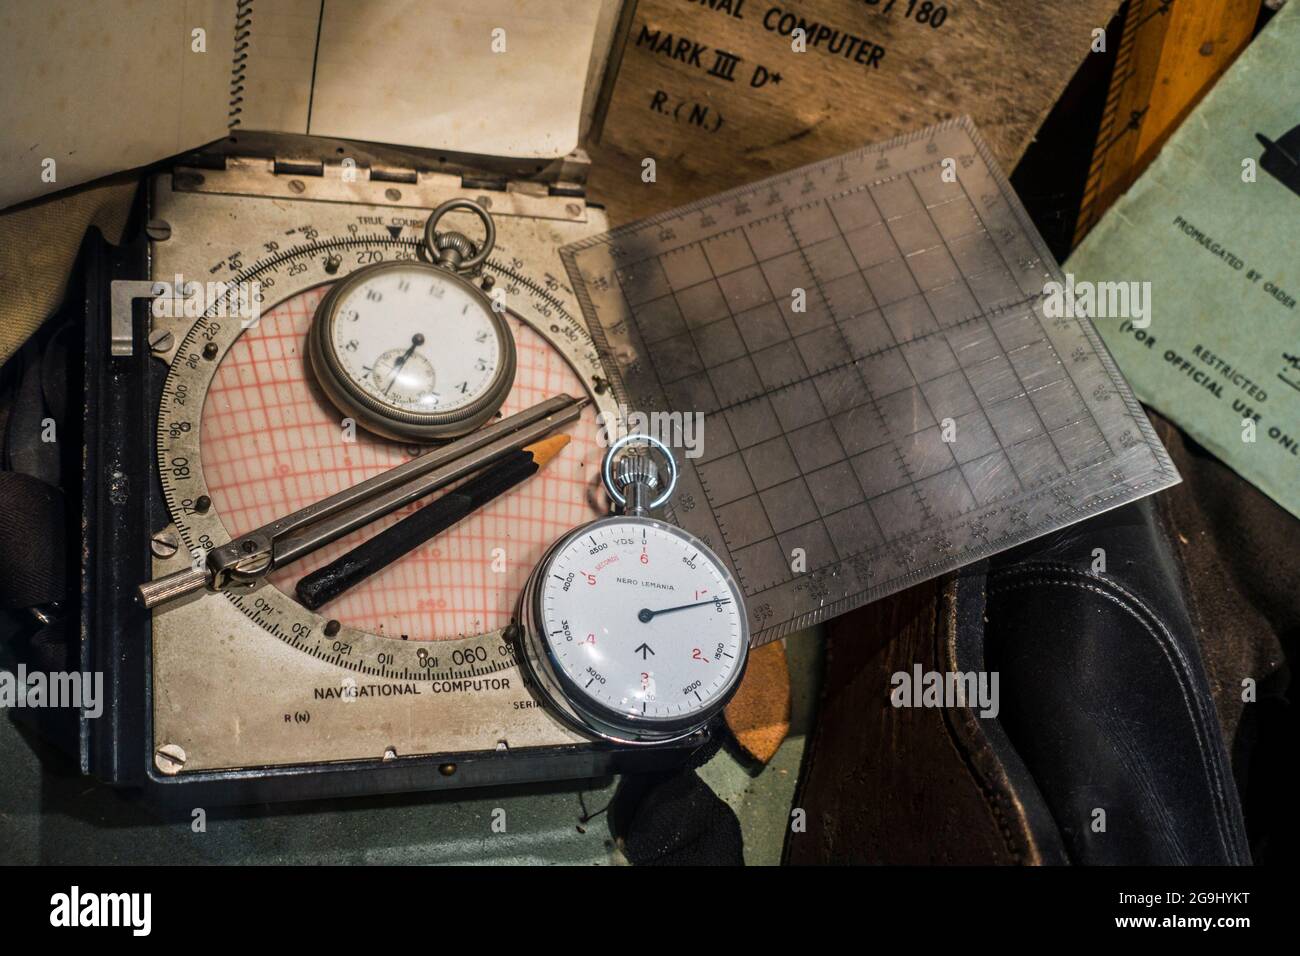 Computer di navigazione britannico della seconda guerra mondiale per il calcolo delle correzioni di altezza, il cronometro Nero Lemania, utilizzato dai piloti RAF durante la seconda guerra mondiale Foto Stock